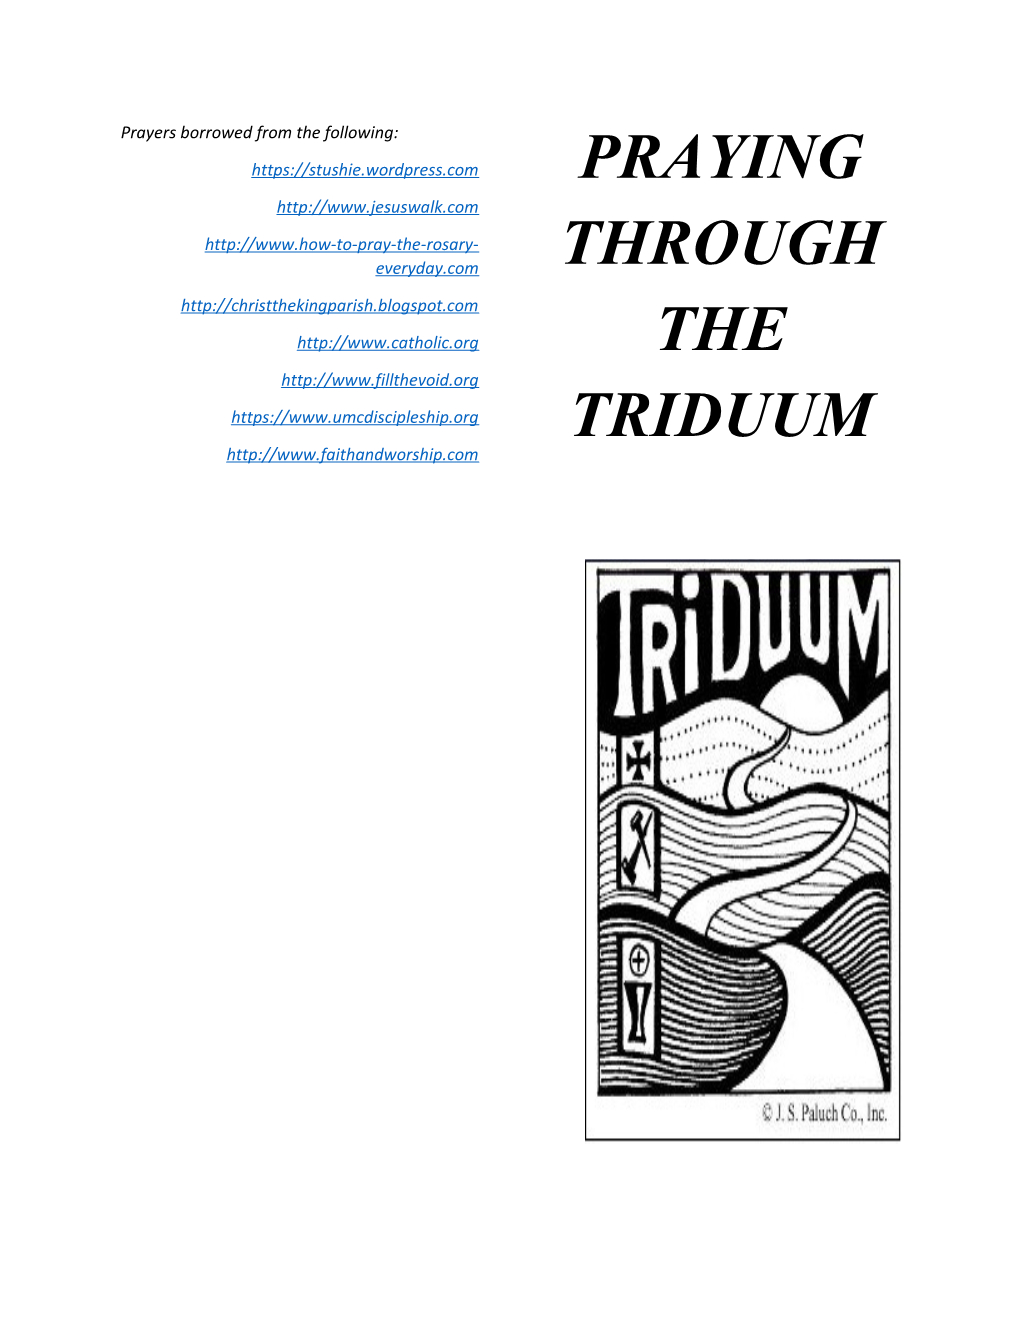 Praying Through the Triduum